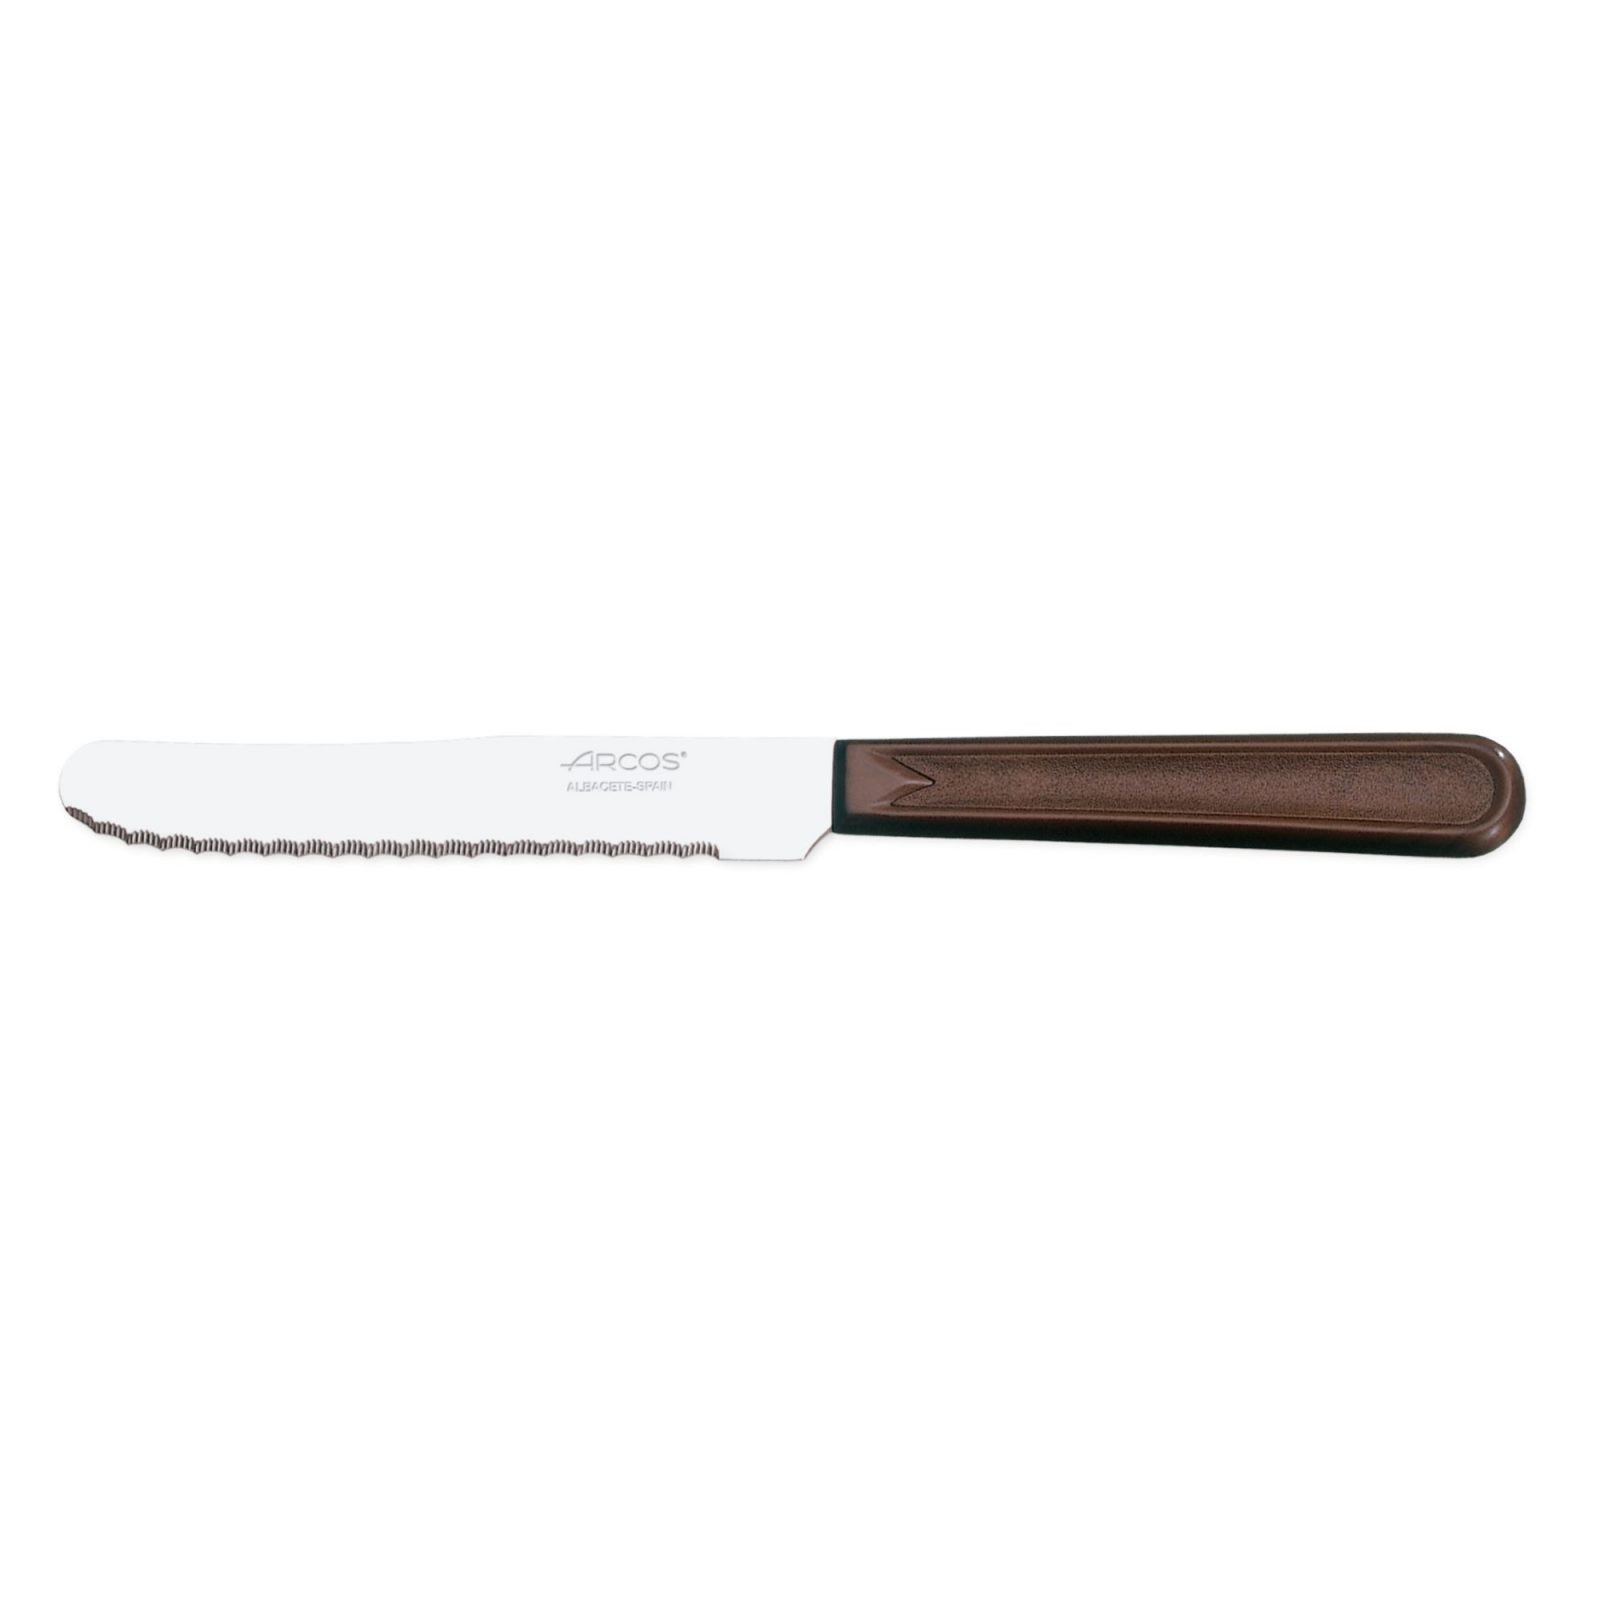 Cuchillo de mesa Arcos 802910 de 110 mm mango polipropileno marrón